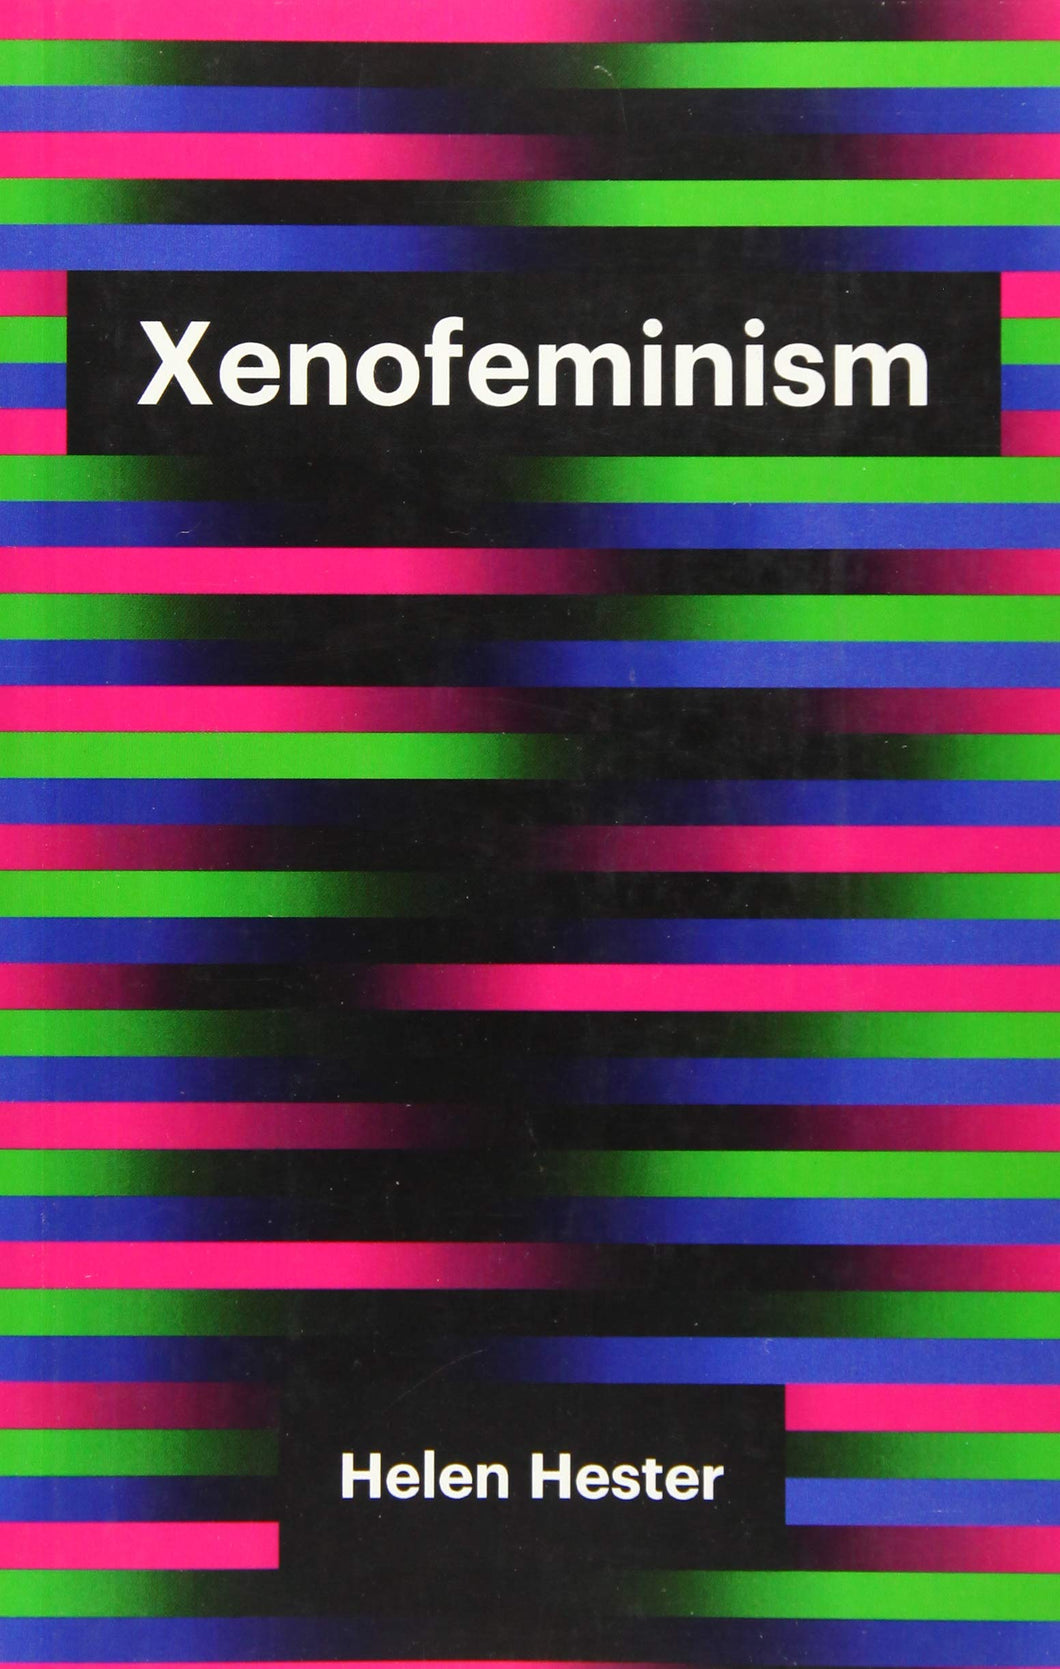 Xenofeminism ร้านหนังสือและสิ่งของ เป็นร้านหนังสือภาษาอังกฤษหายาก และร้านกาแฟ หรือ บุ๊คคาเฟ่ ตั้งอยู่สุขุมวิท กรุงเทพ